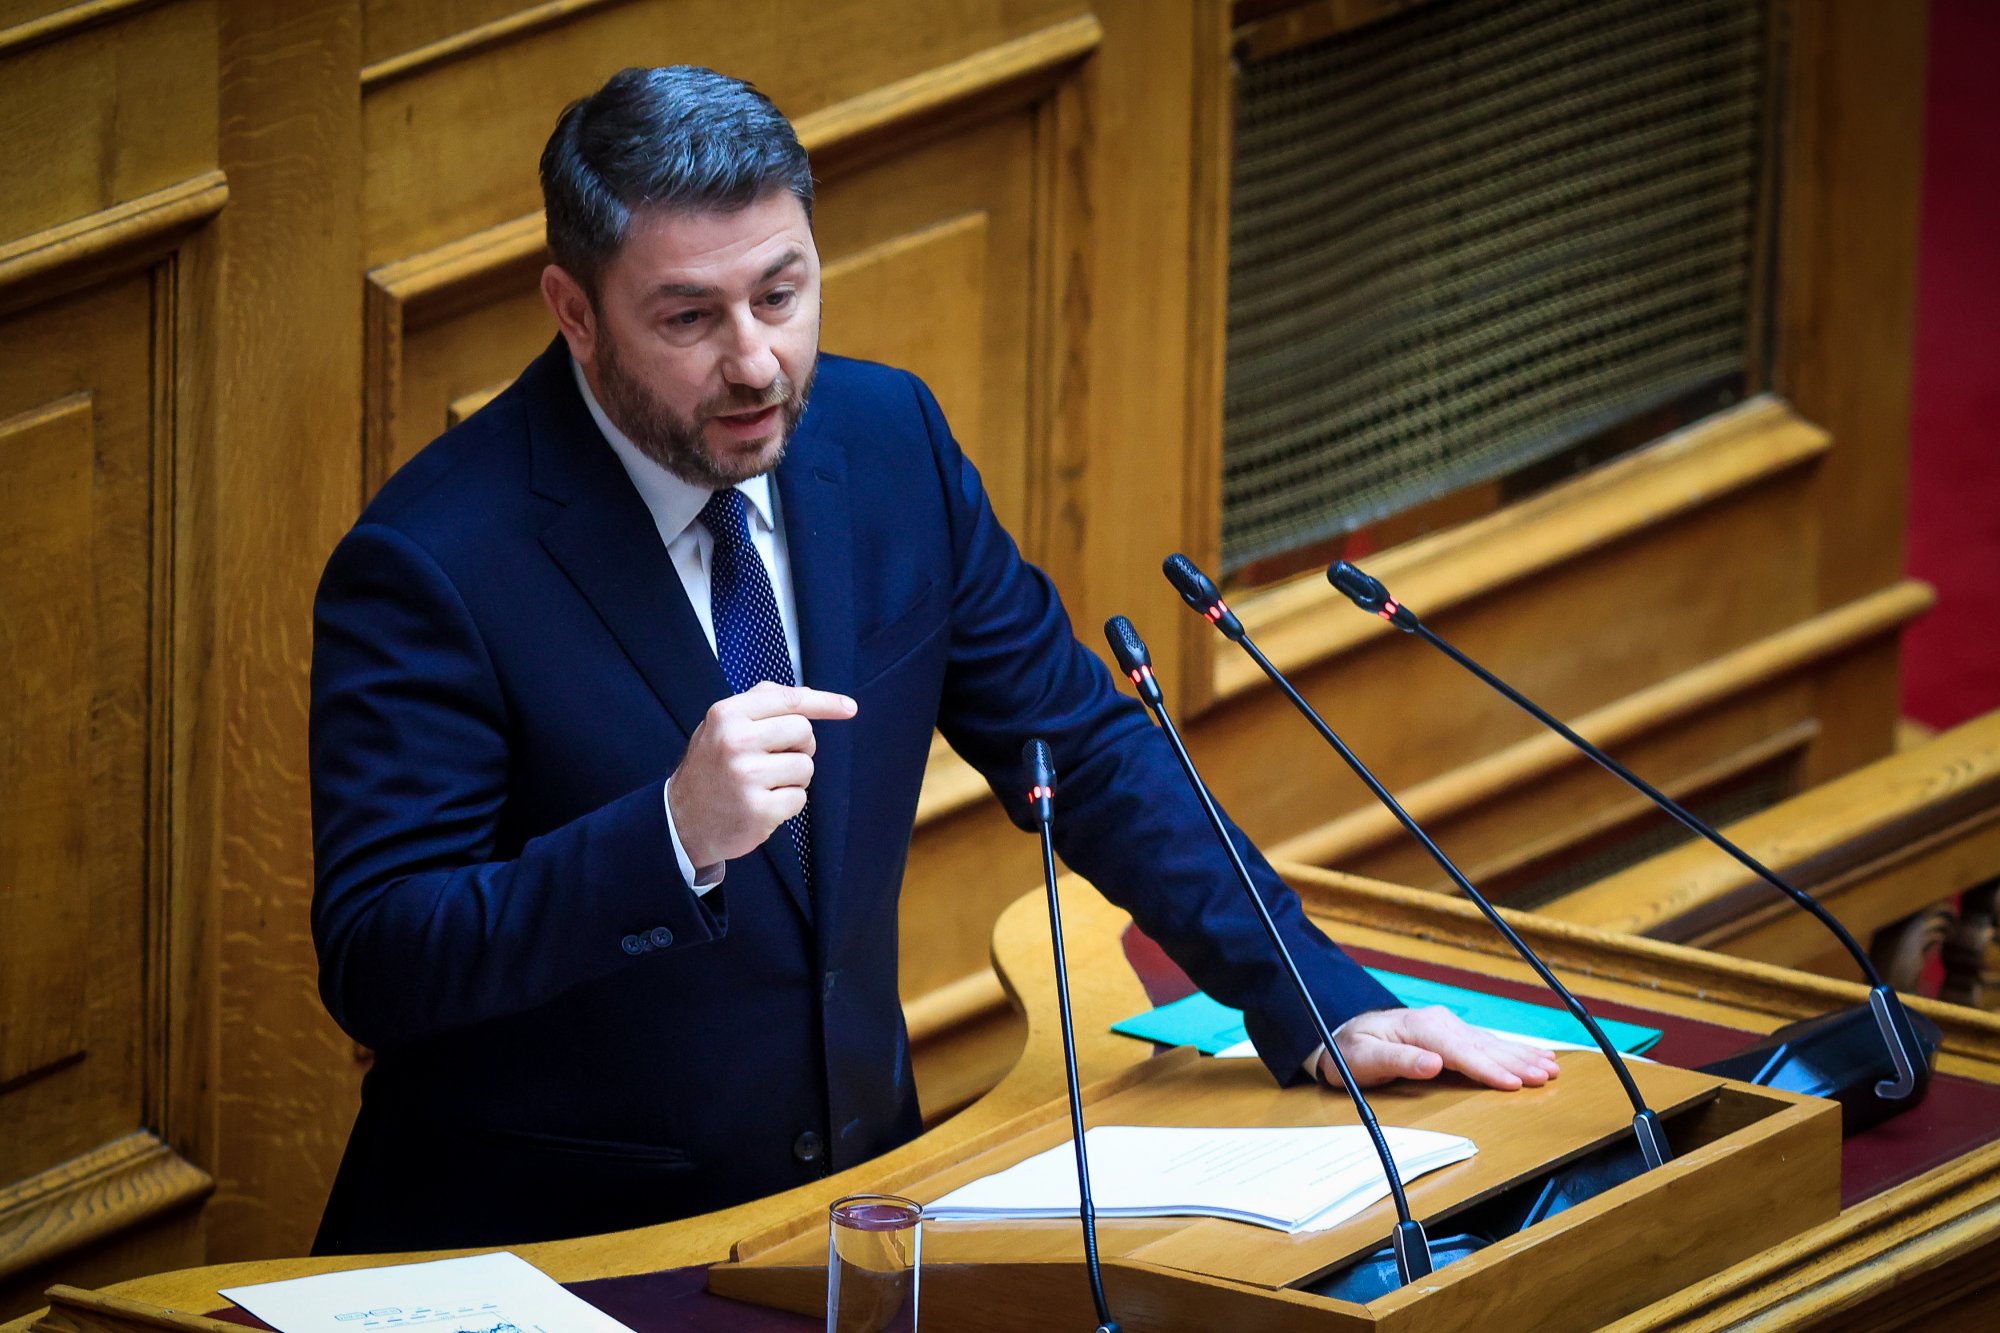 Ανδρουλάκης σε Μητσοτάκη: Ρίχνετε τον πήχη χαμηλά ώστε να τον ξεπερνάτε - Είστε ένας αδύναμος πρωθυπουργός